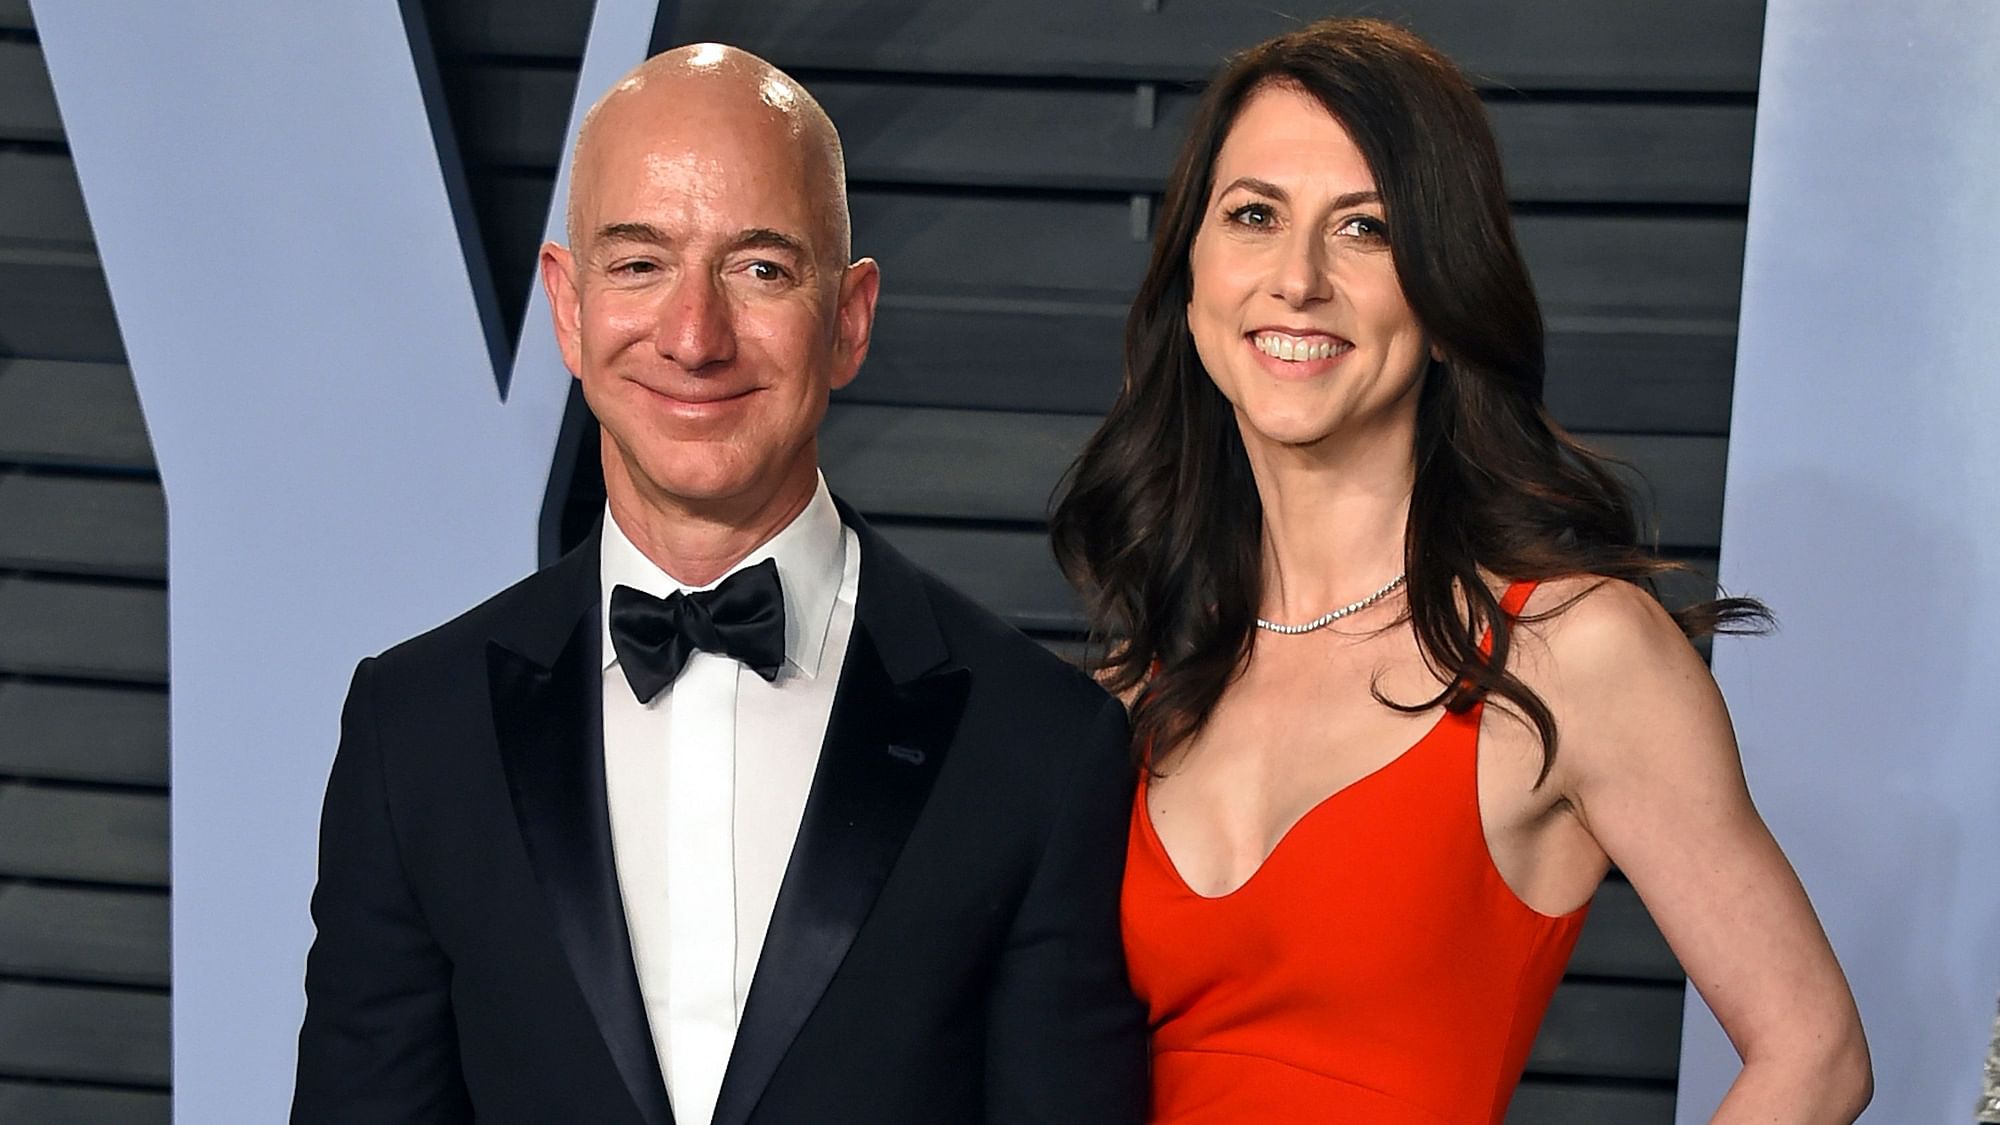  Jeff Bezos with ex-wife MacKenzie Bezos.